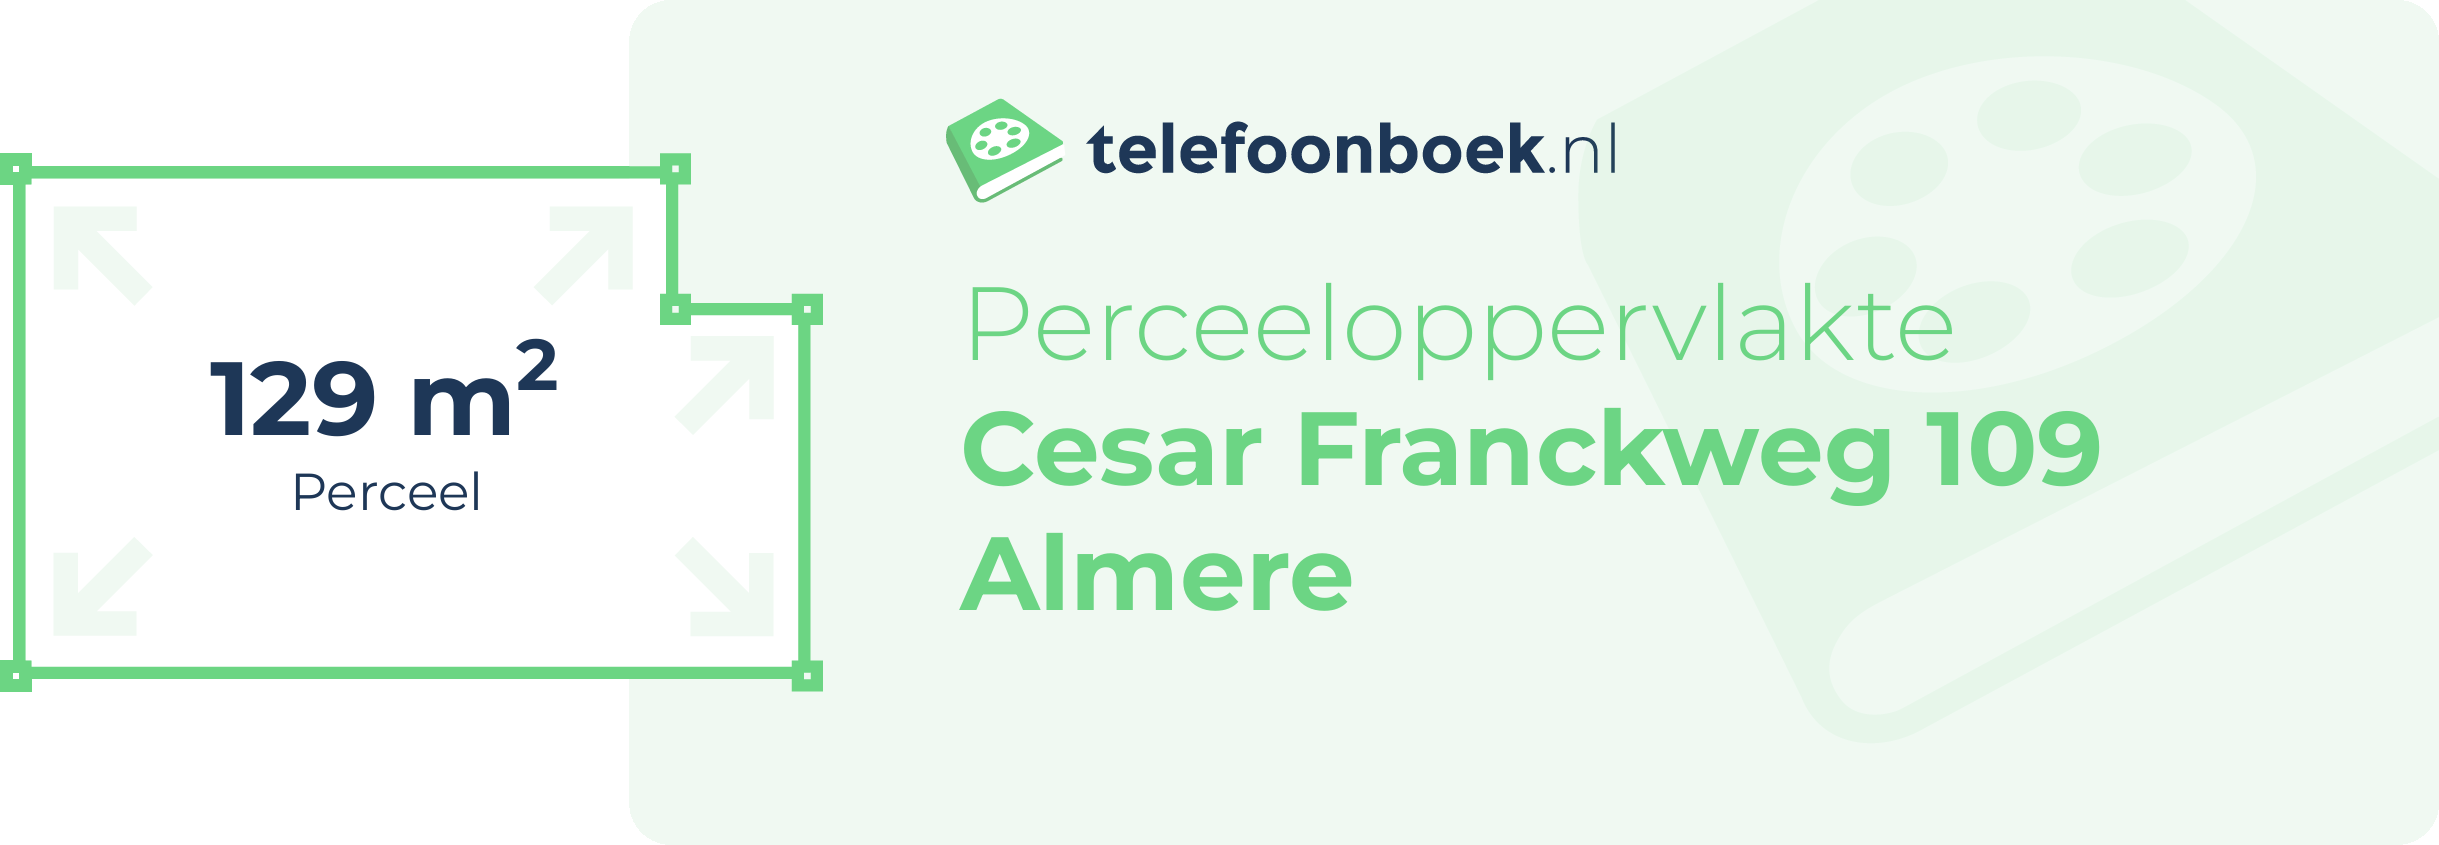 Perceeloppervlakte Cesar Franckweg 109 Almere